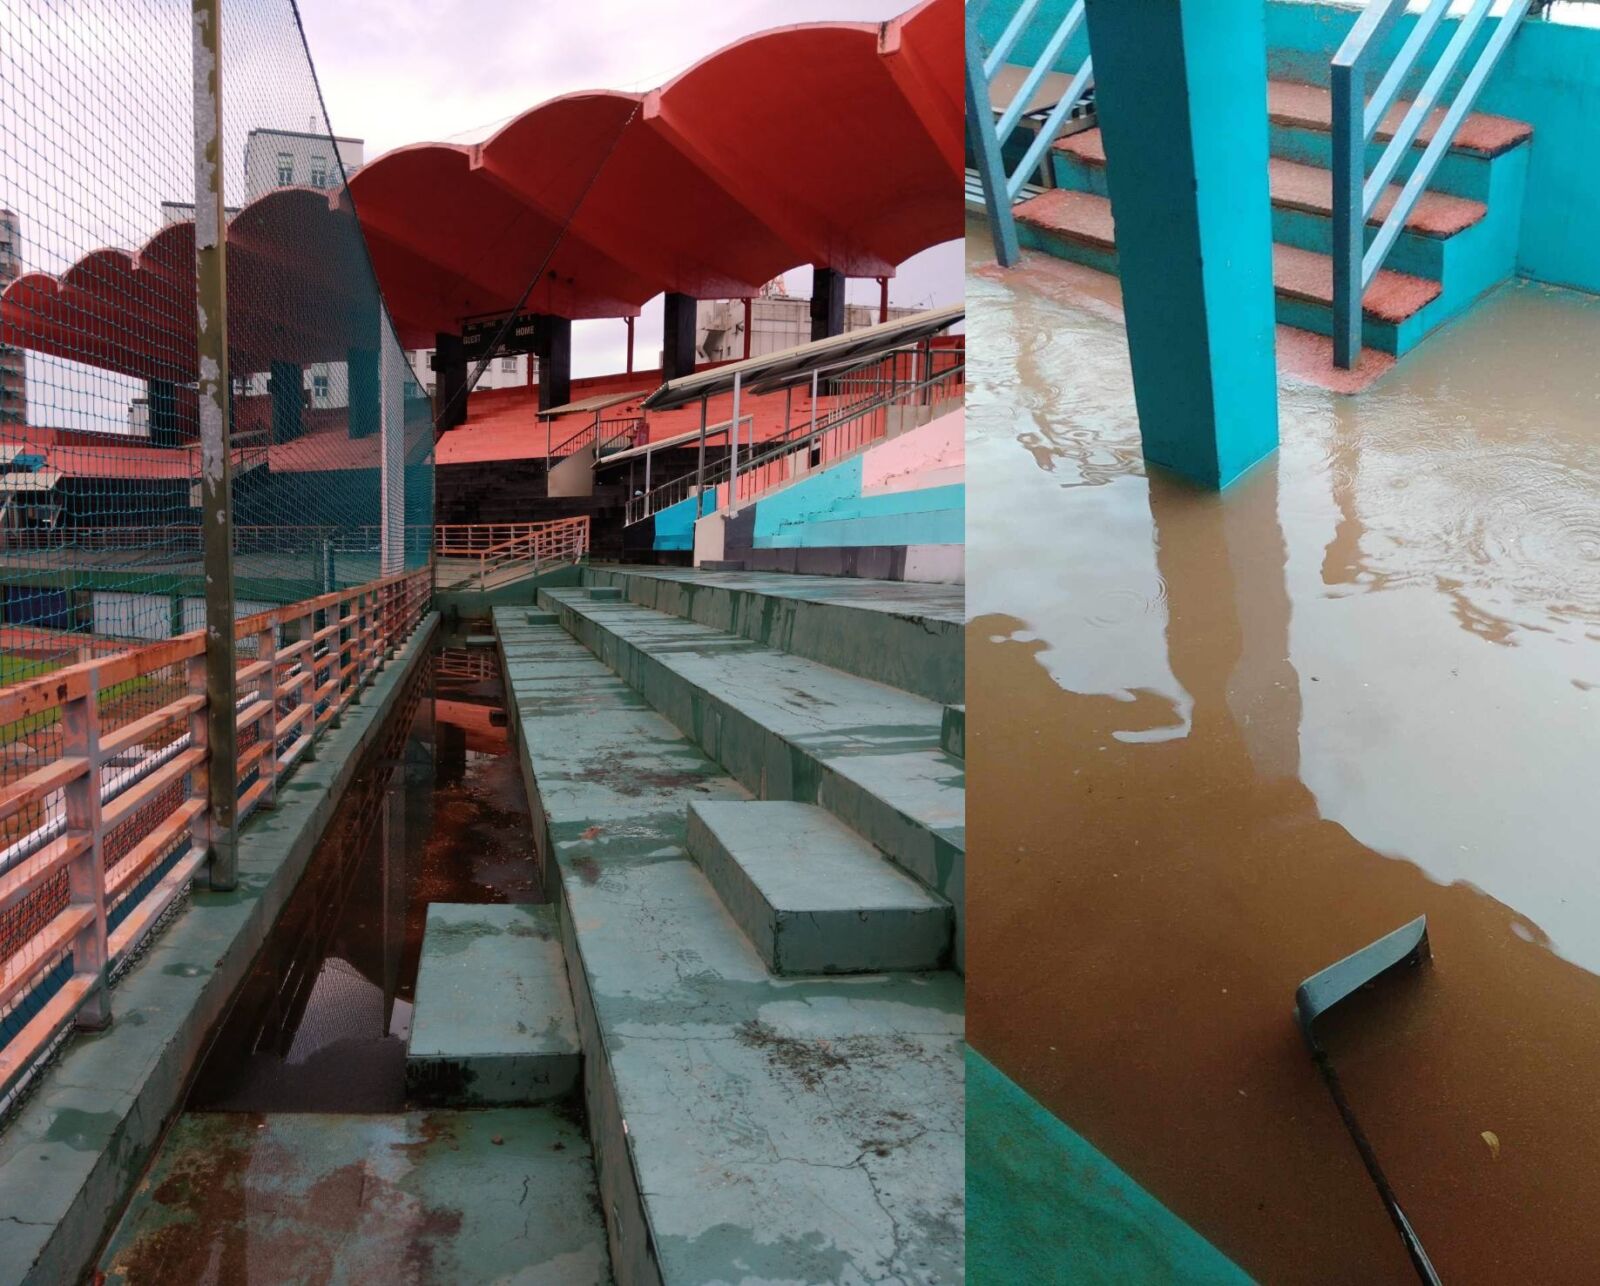 屏東唯一棒球場殘破不堪還淹水 擬將建體育園區挨藍委批太貴將成無底錢坑 265